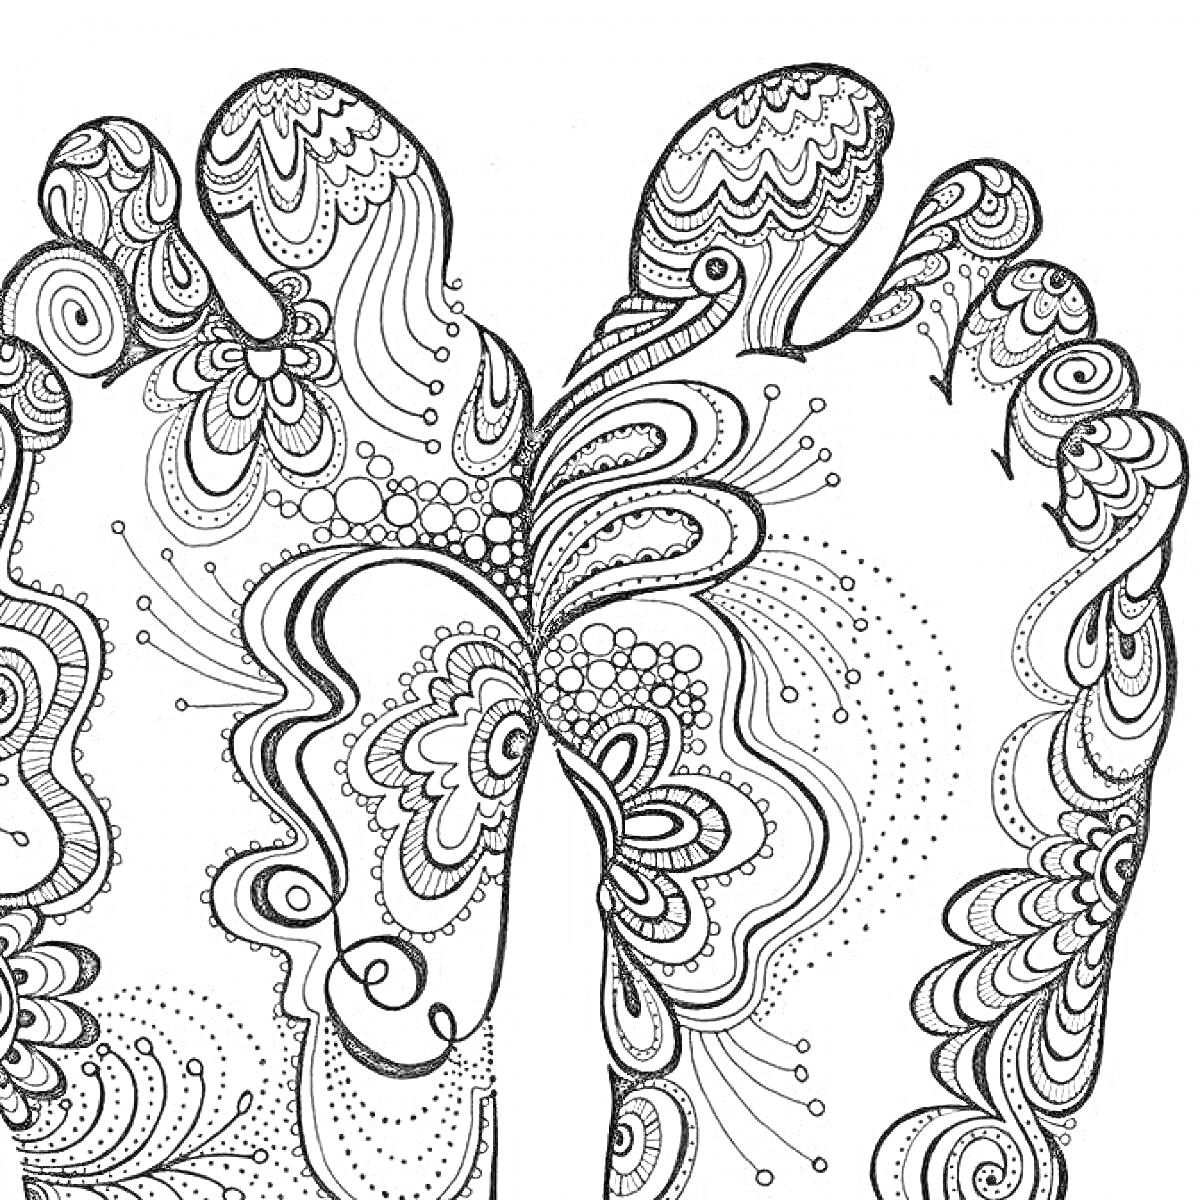 Раскраска Две стопы с узорами в стиле хиппи, включая цветочные мотивы, завитки и точки